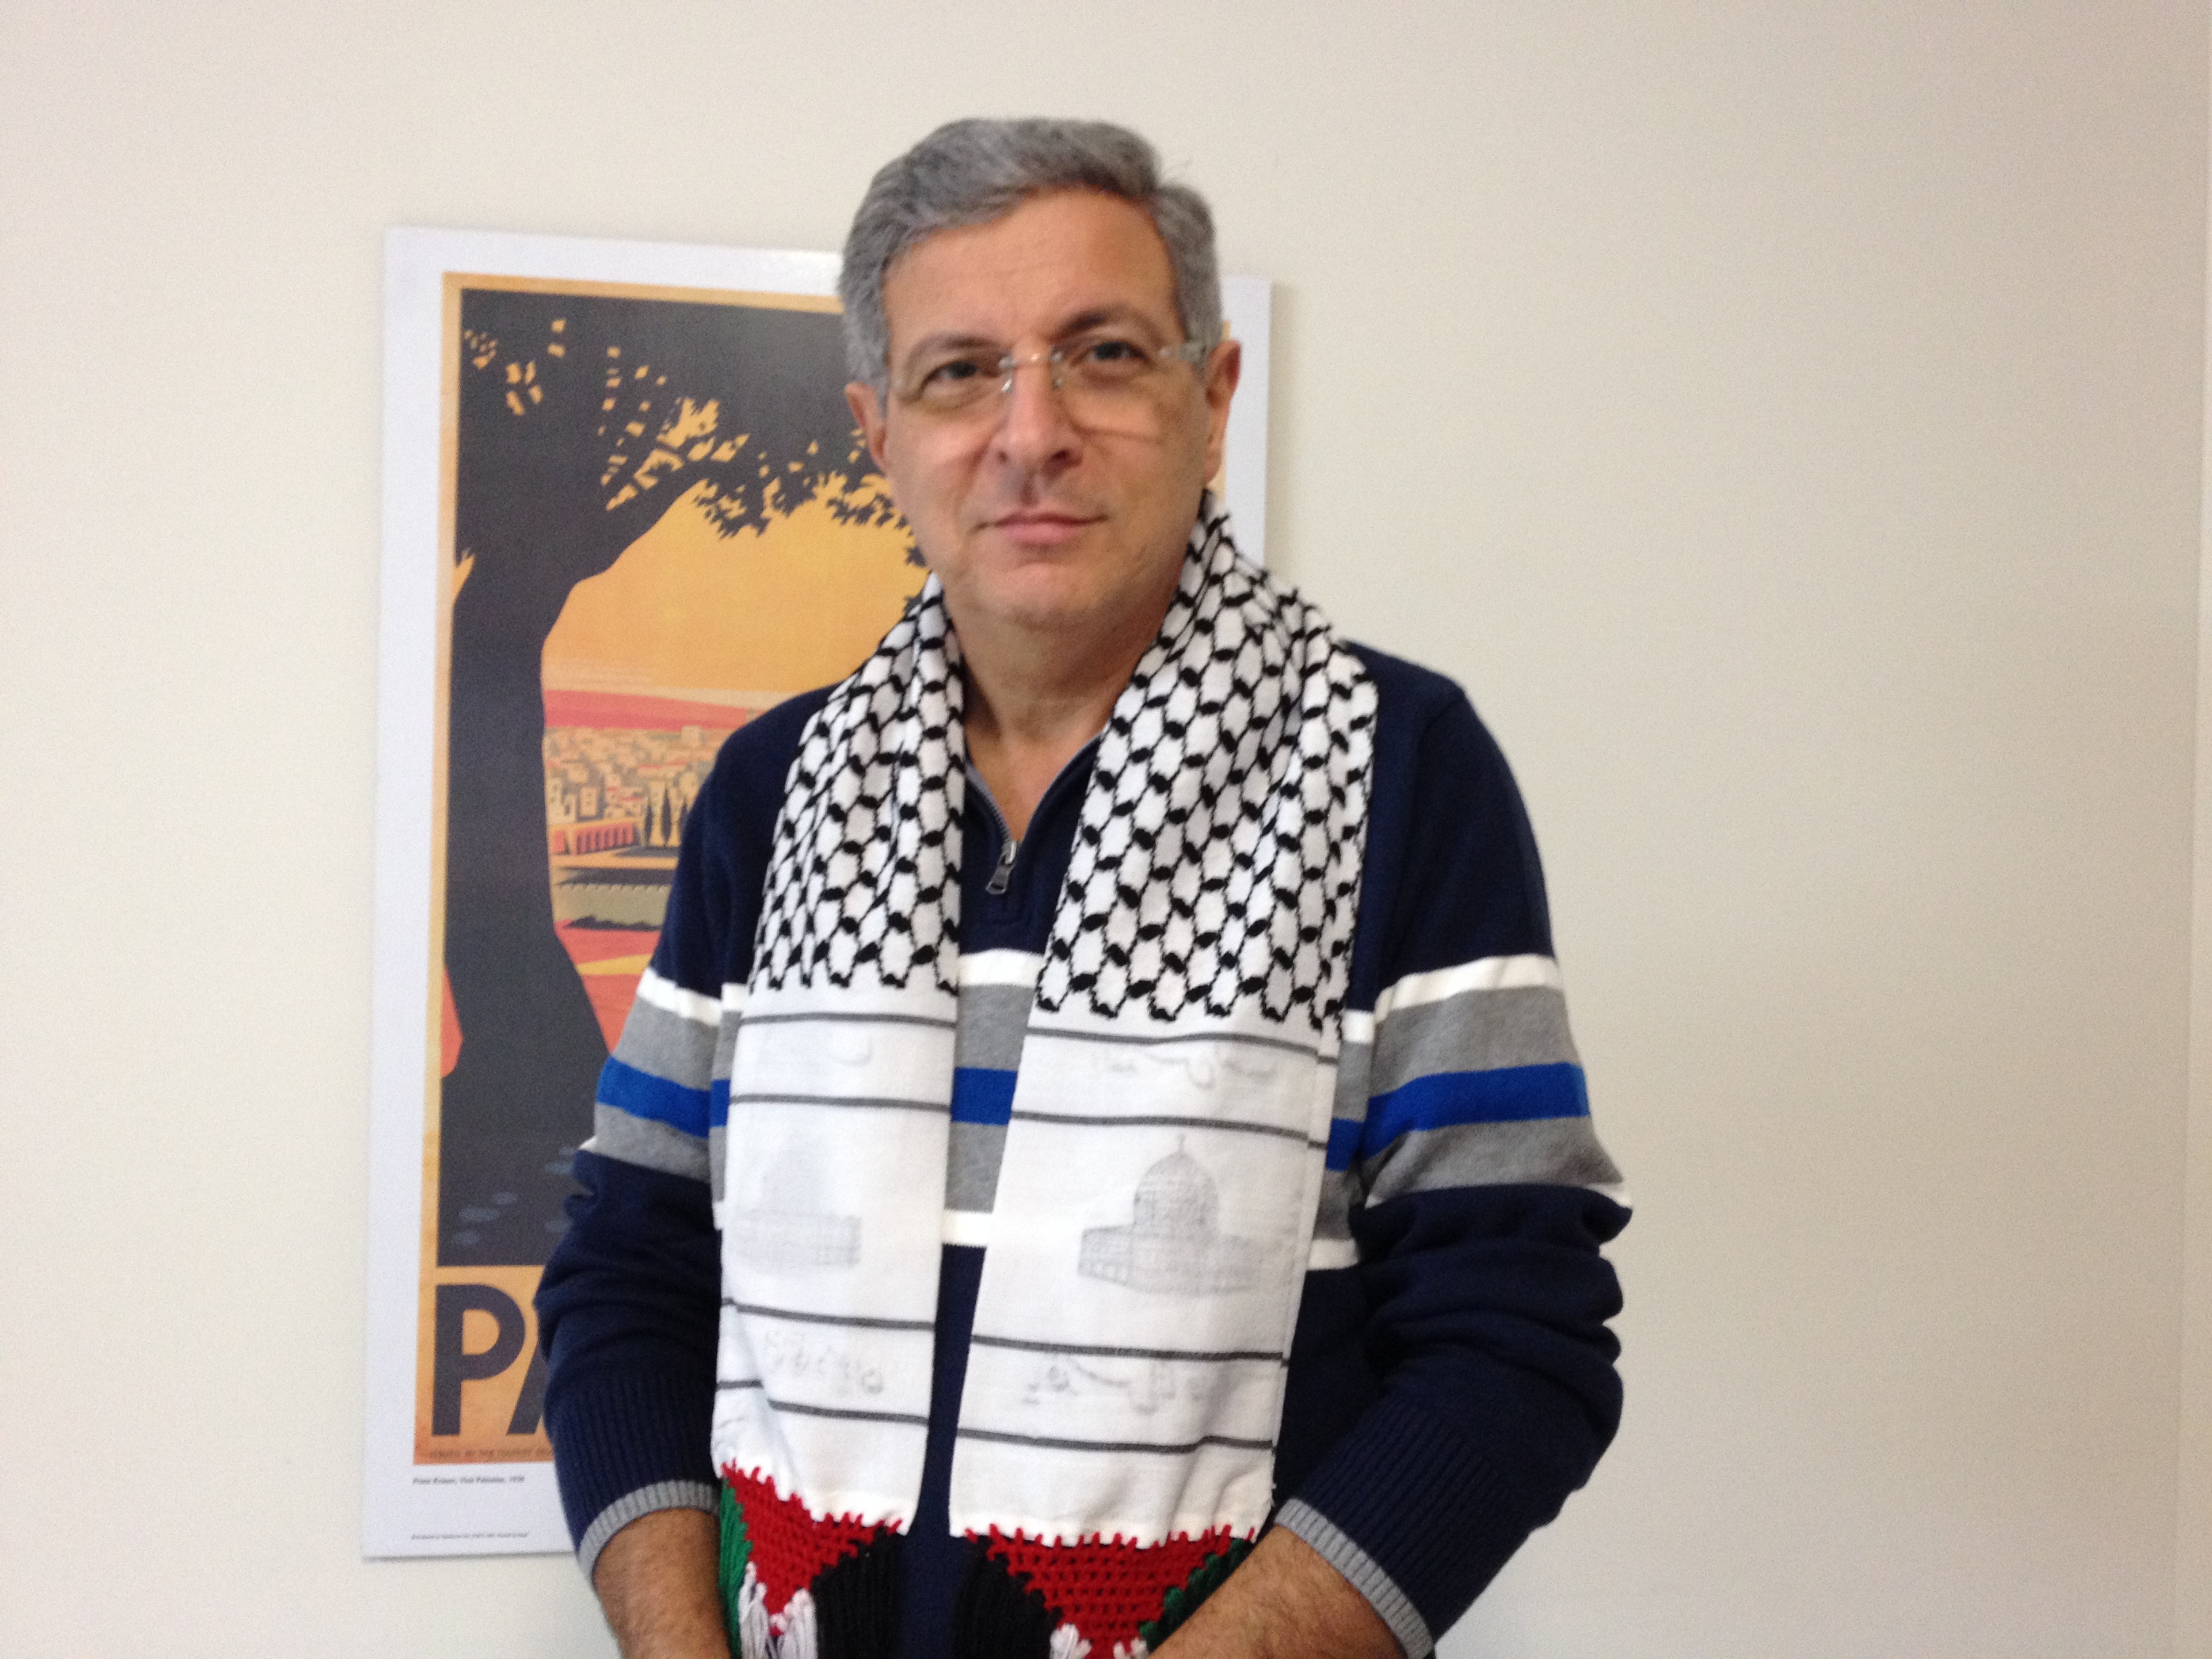 BDS Australia convenor Hilmi Dabbagh